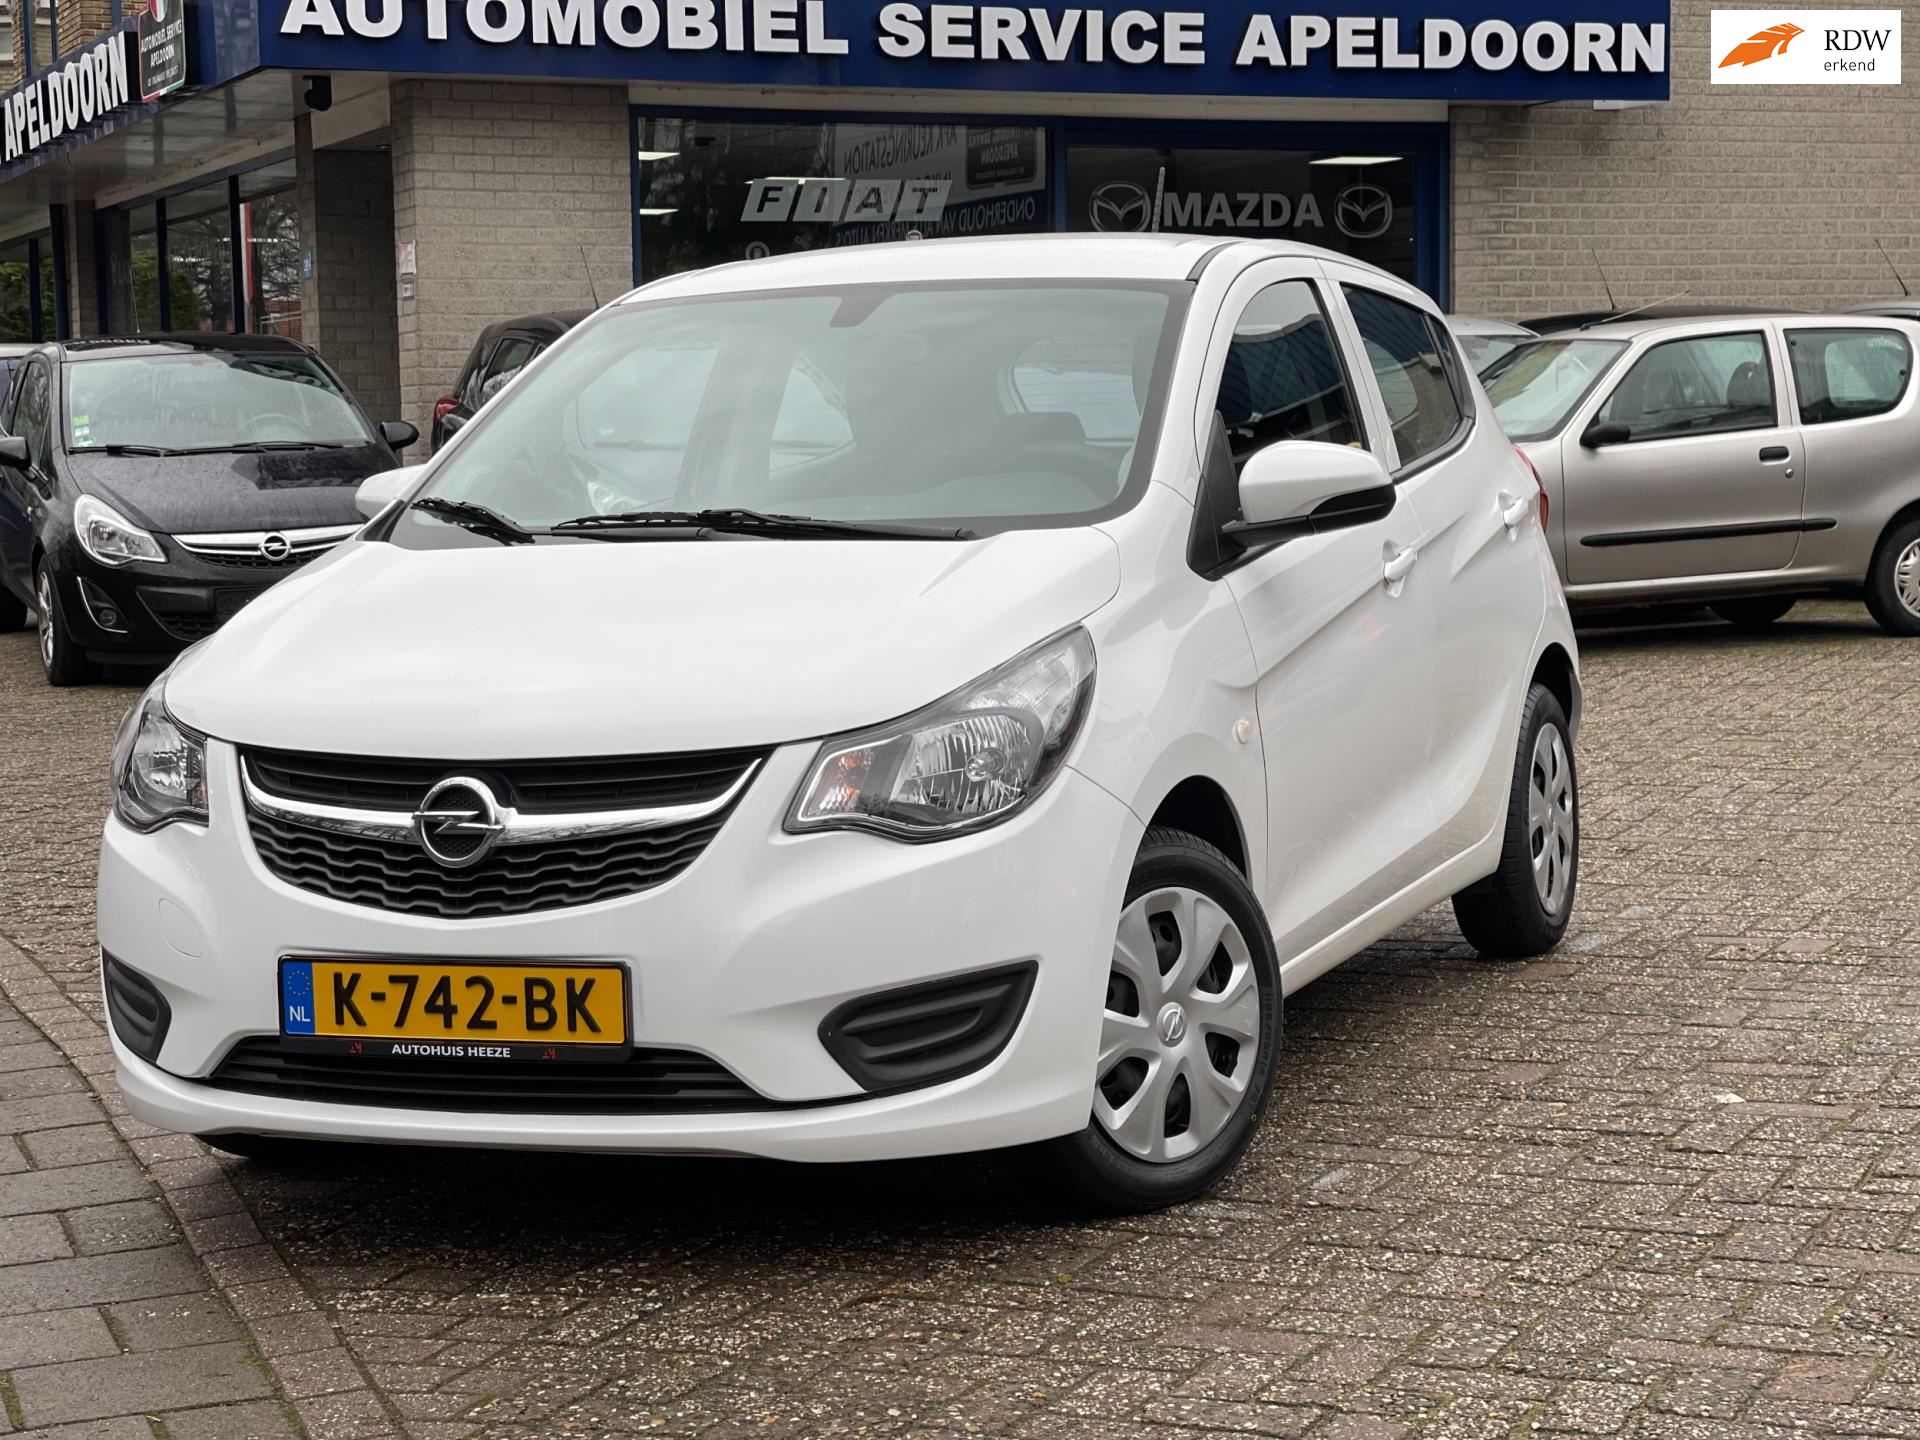 Opel KARL occasion - Automobiel Service Apeldoorn